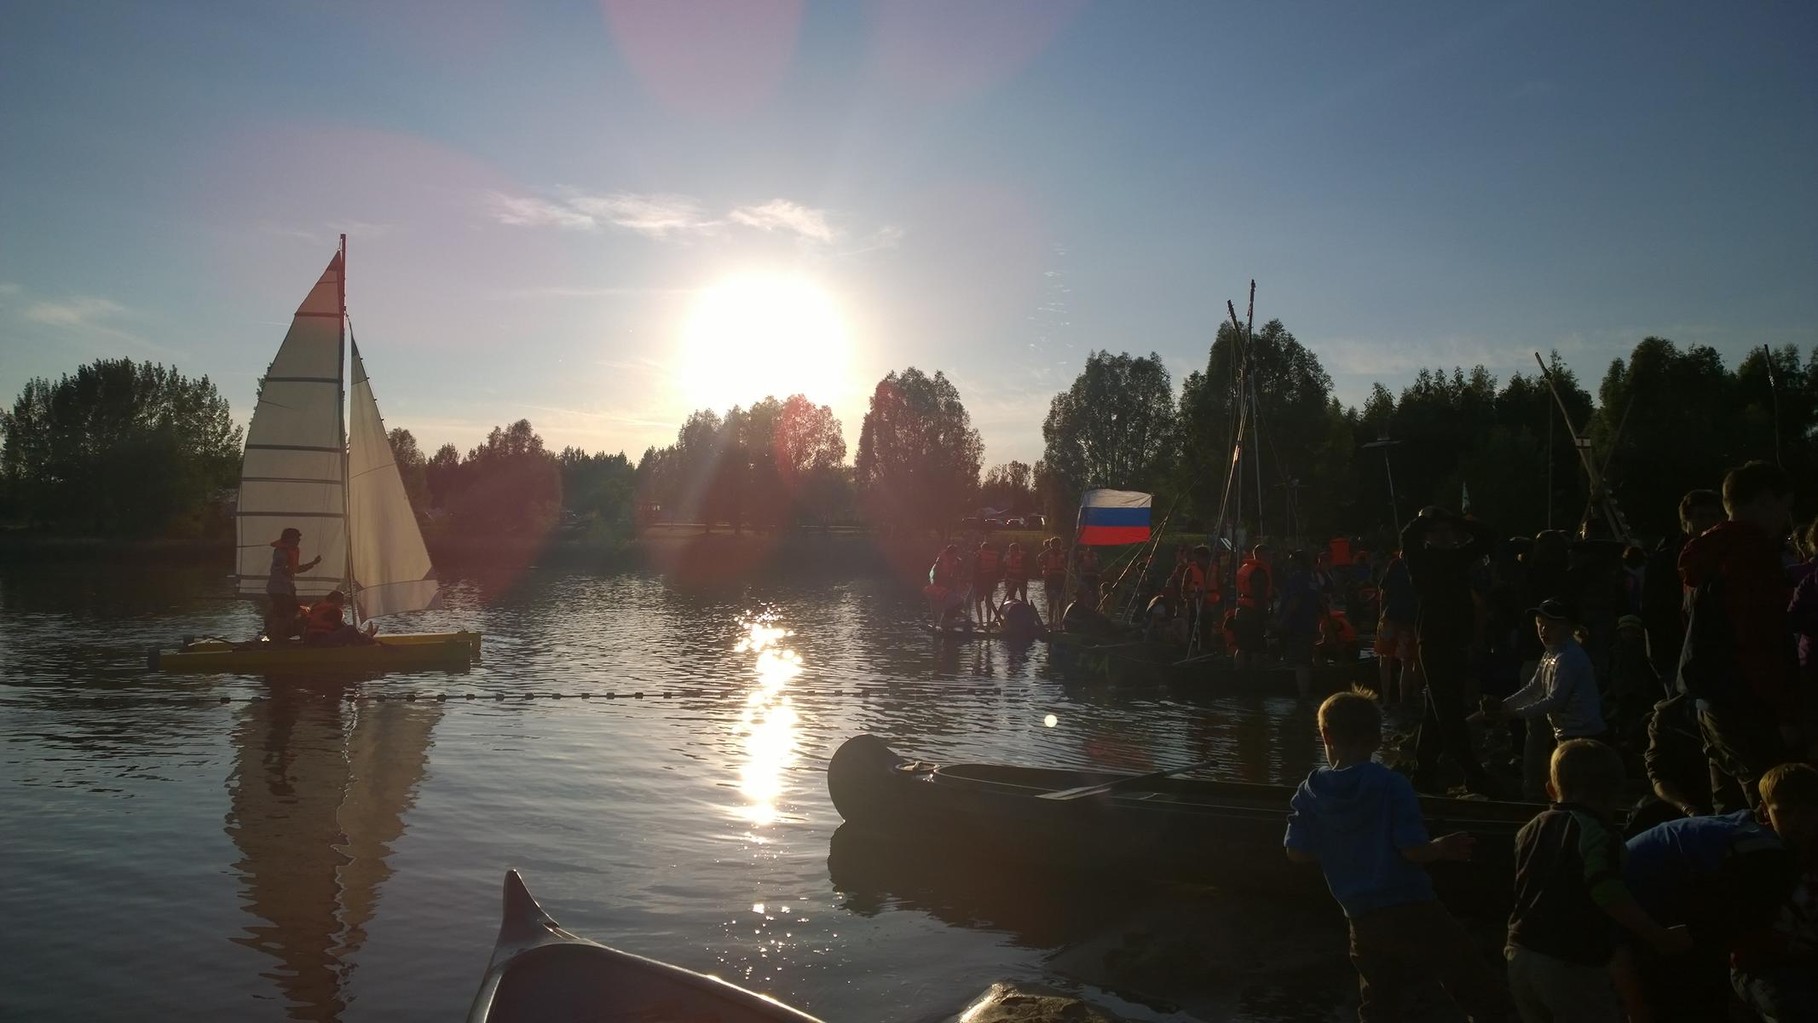 Himmelfahrtslager am Mondsee - Wassermeisterschaften der Olympischen Spiele